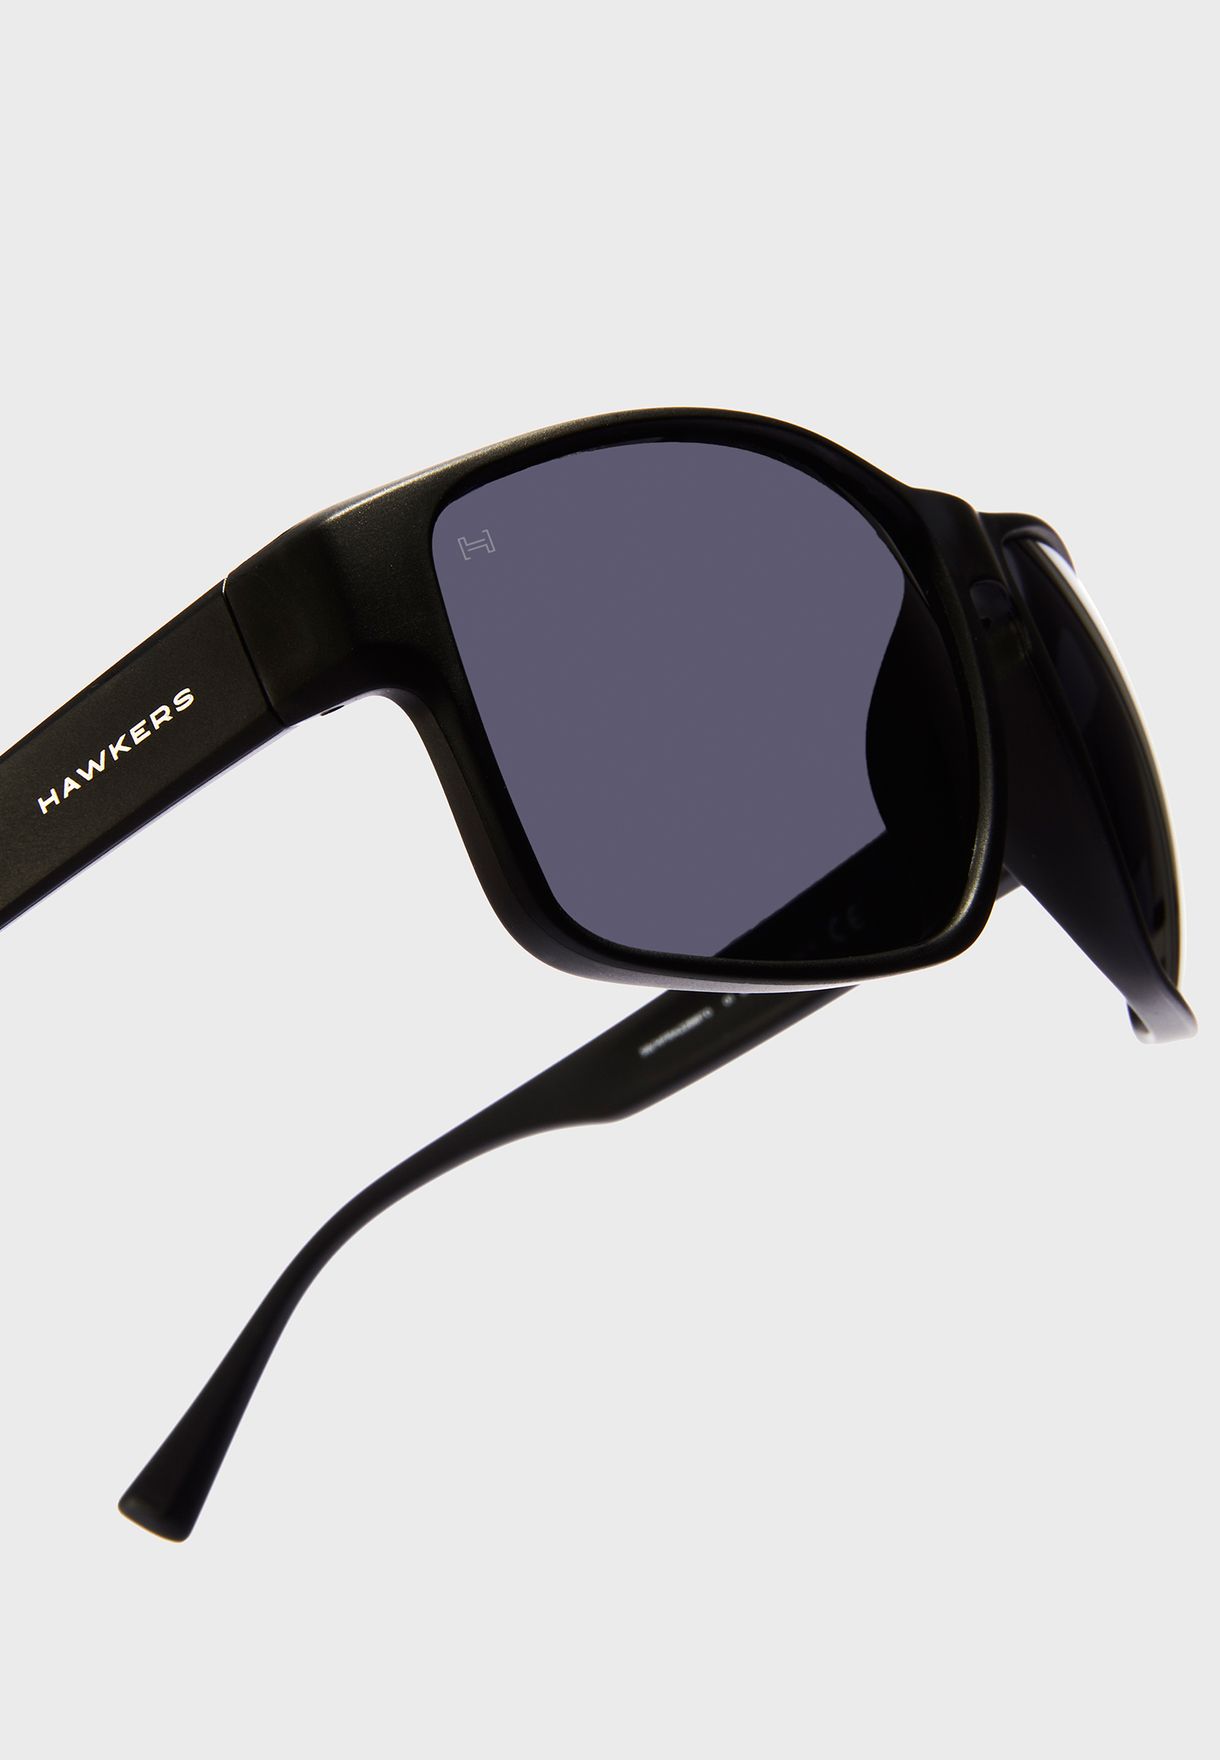   نظارة شمسية واي فيرر